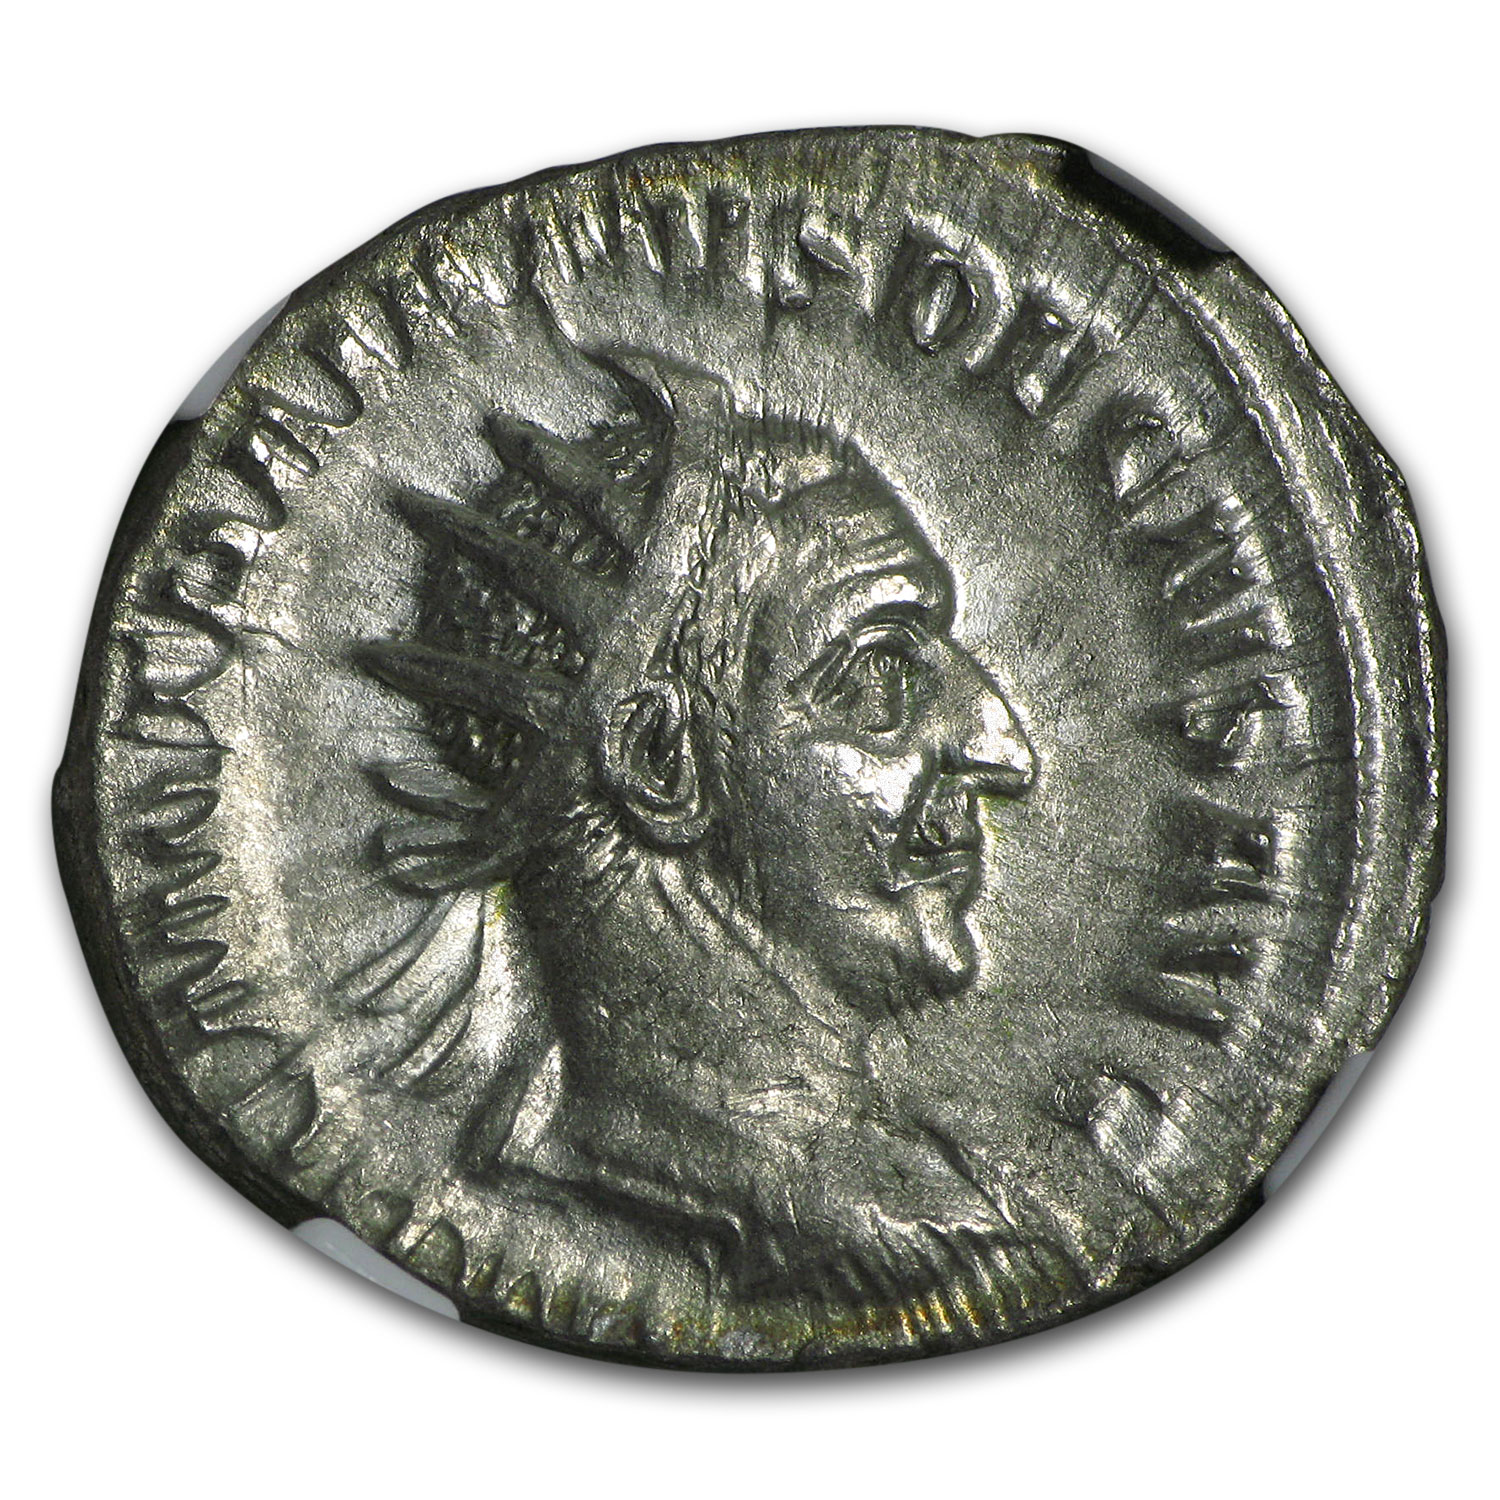 denarius roman coin